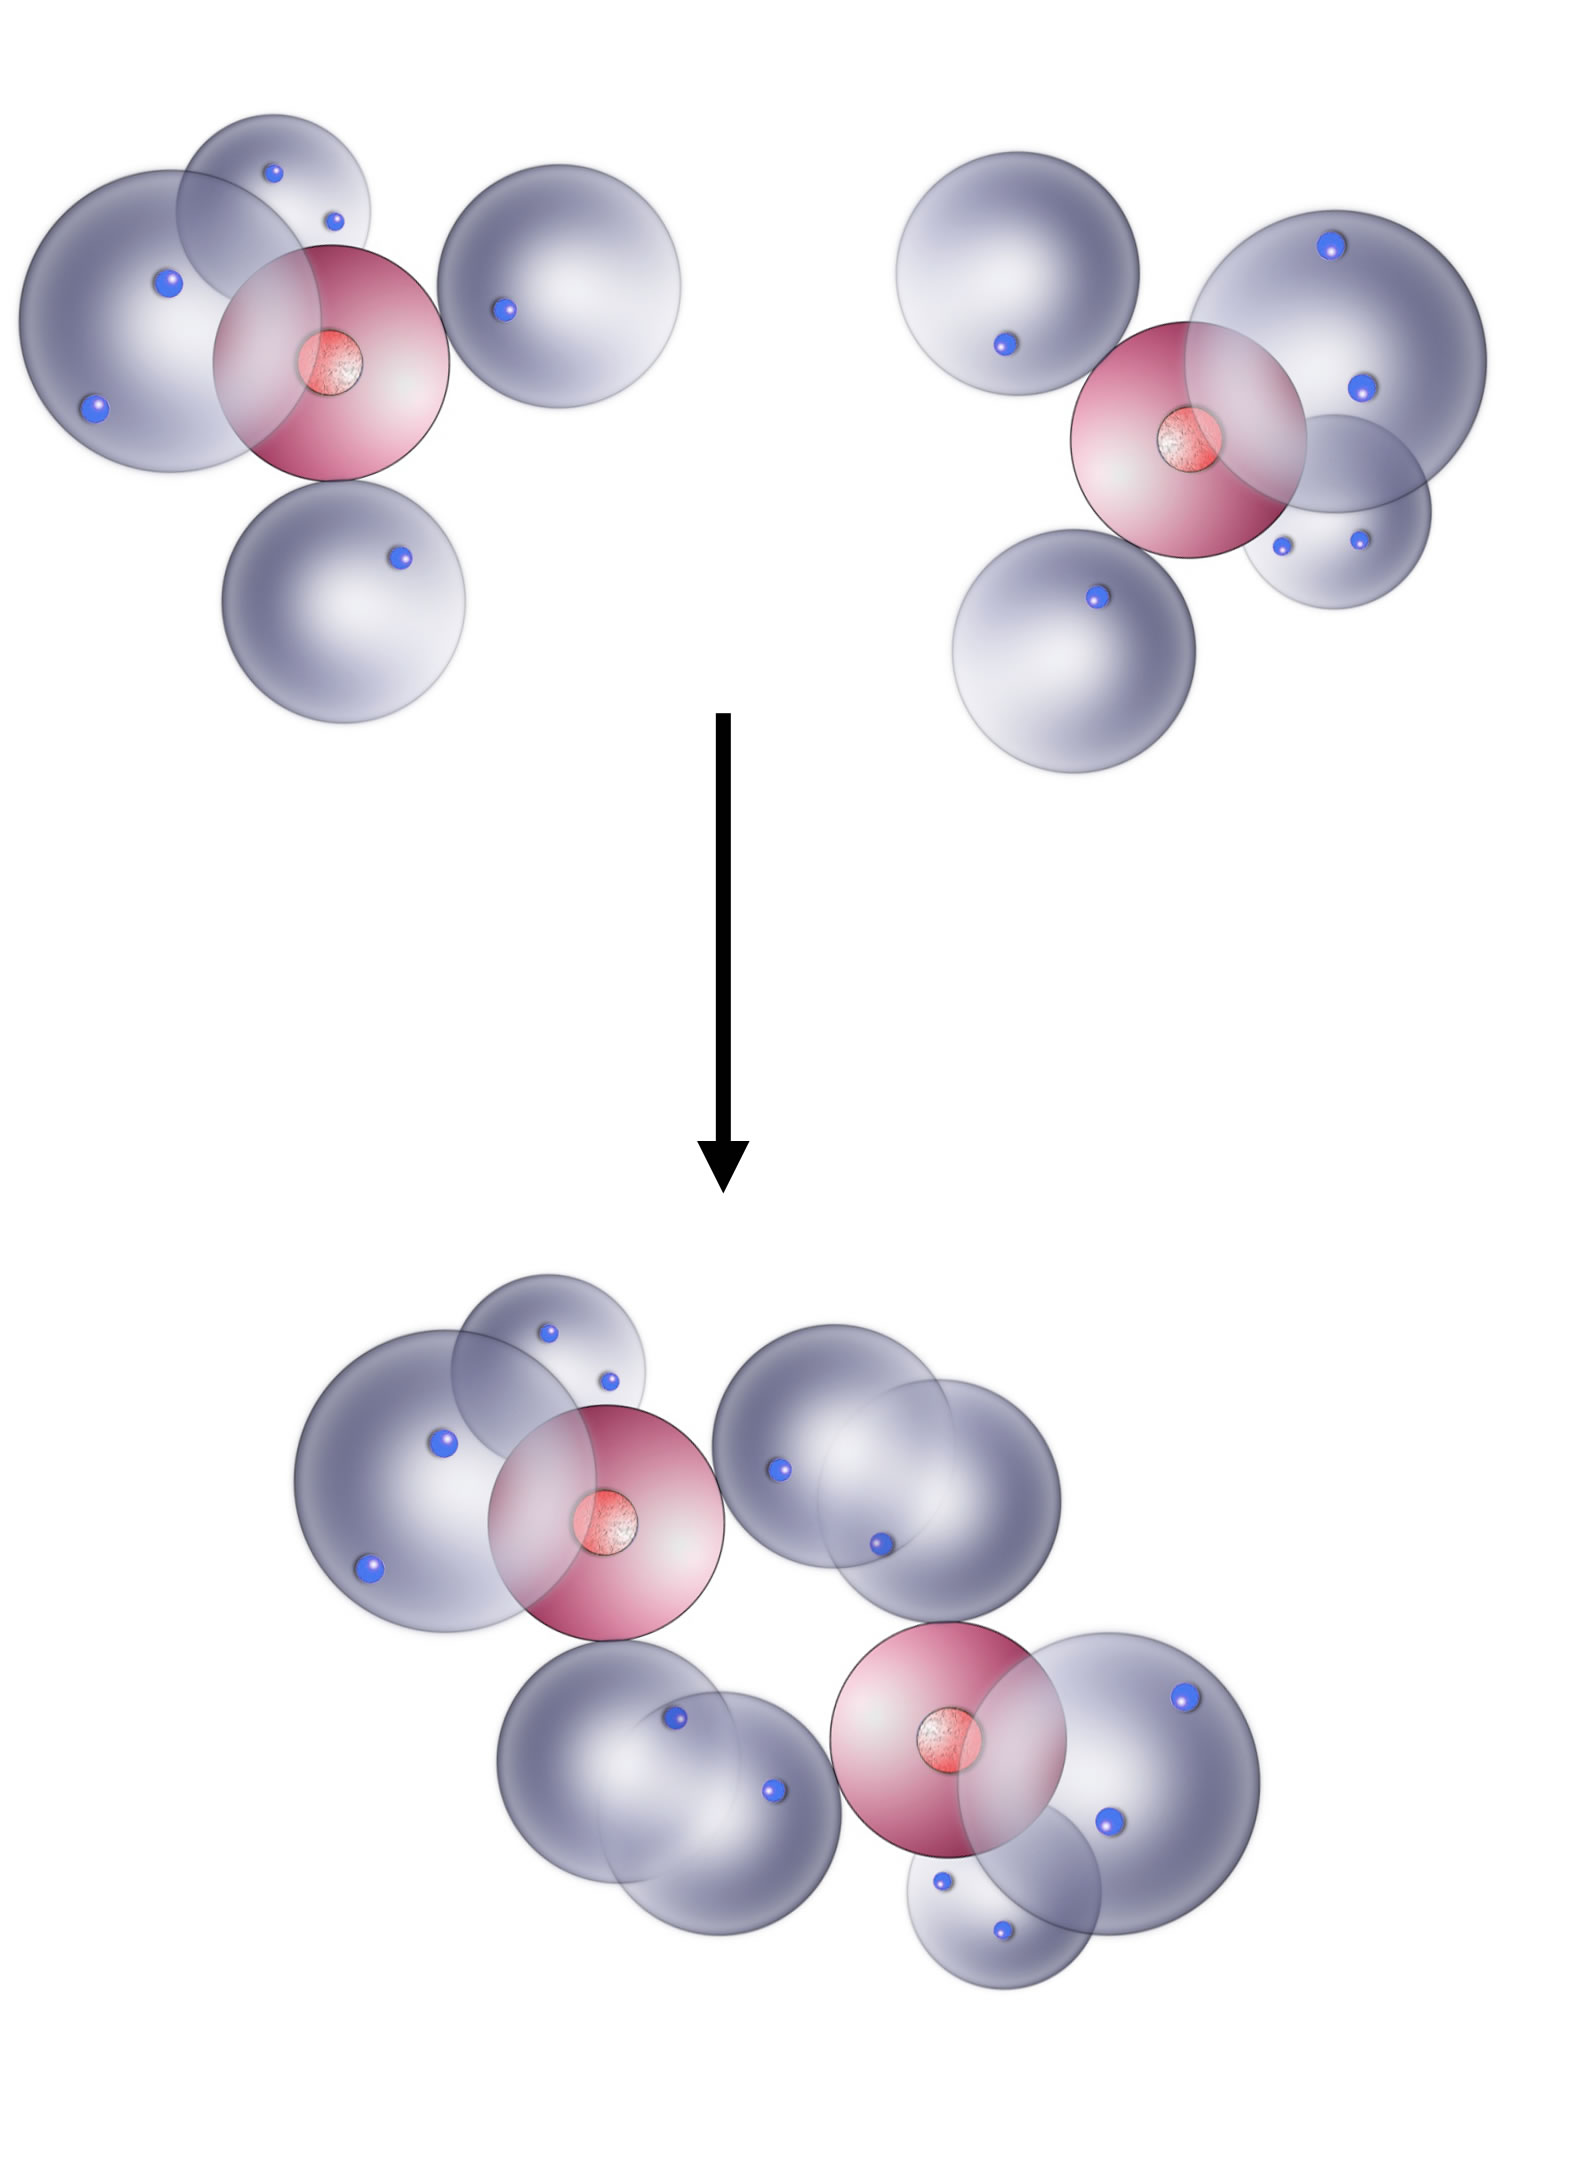 Das O2-Molekül im KWM